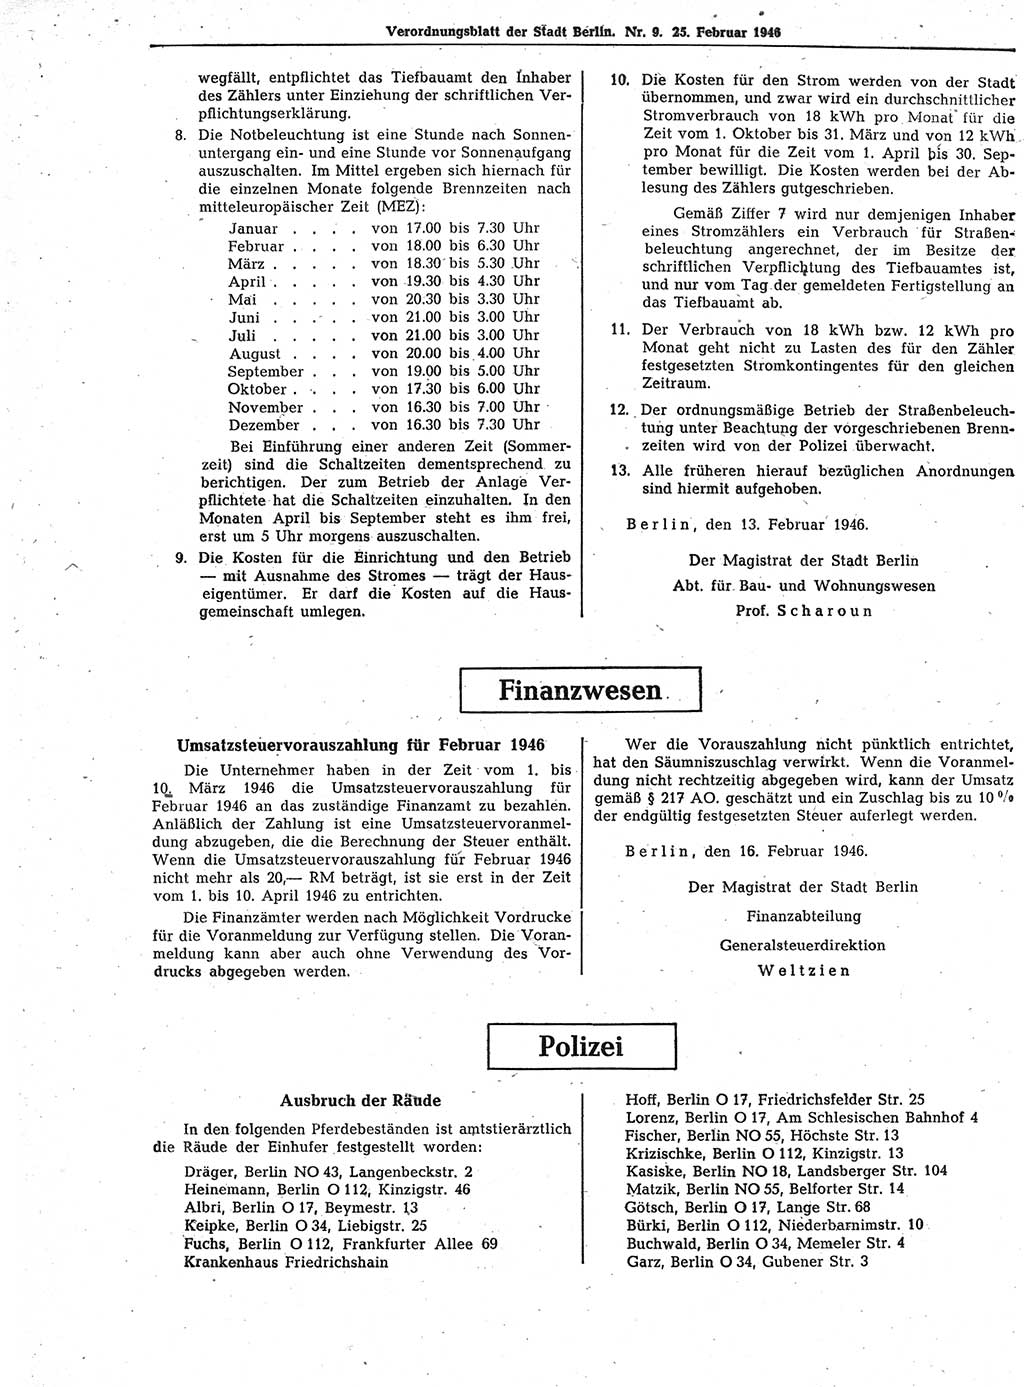 Verordnungsblatt (VOBl.) der Stadt Berlin, für Groß-Berlin 1946, Seite 56 (VOBl. Bln. 1946, S. 56)